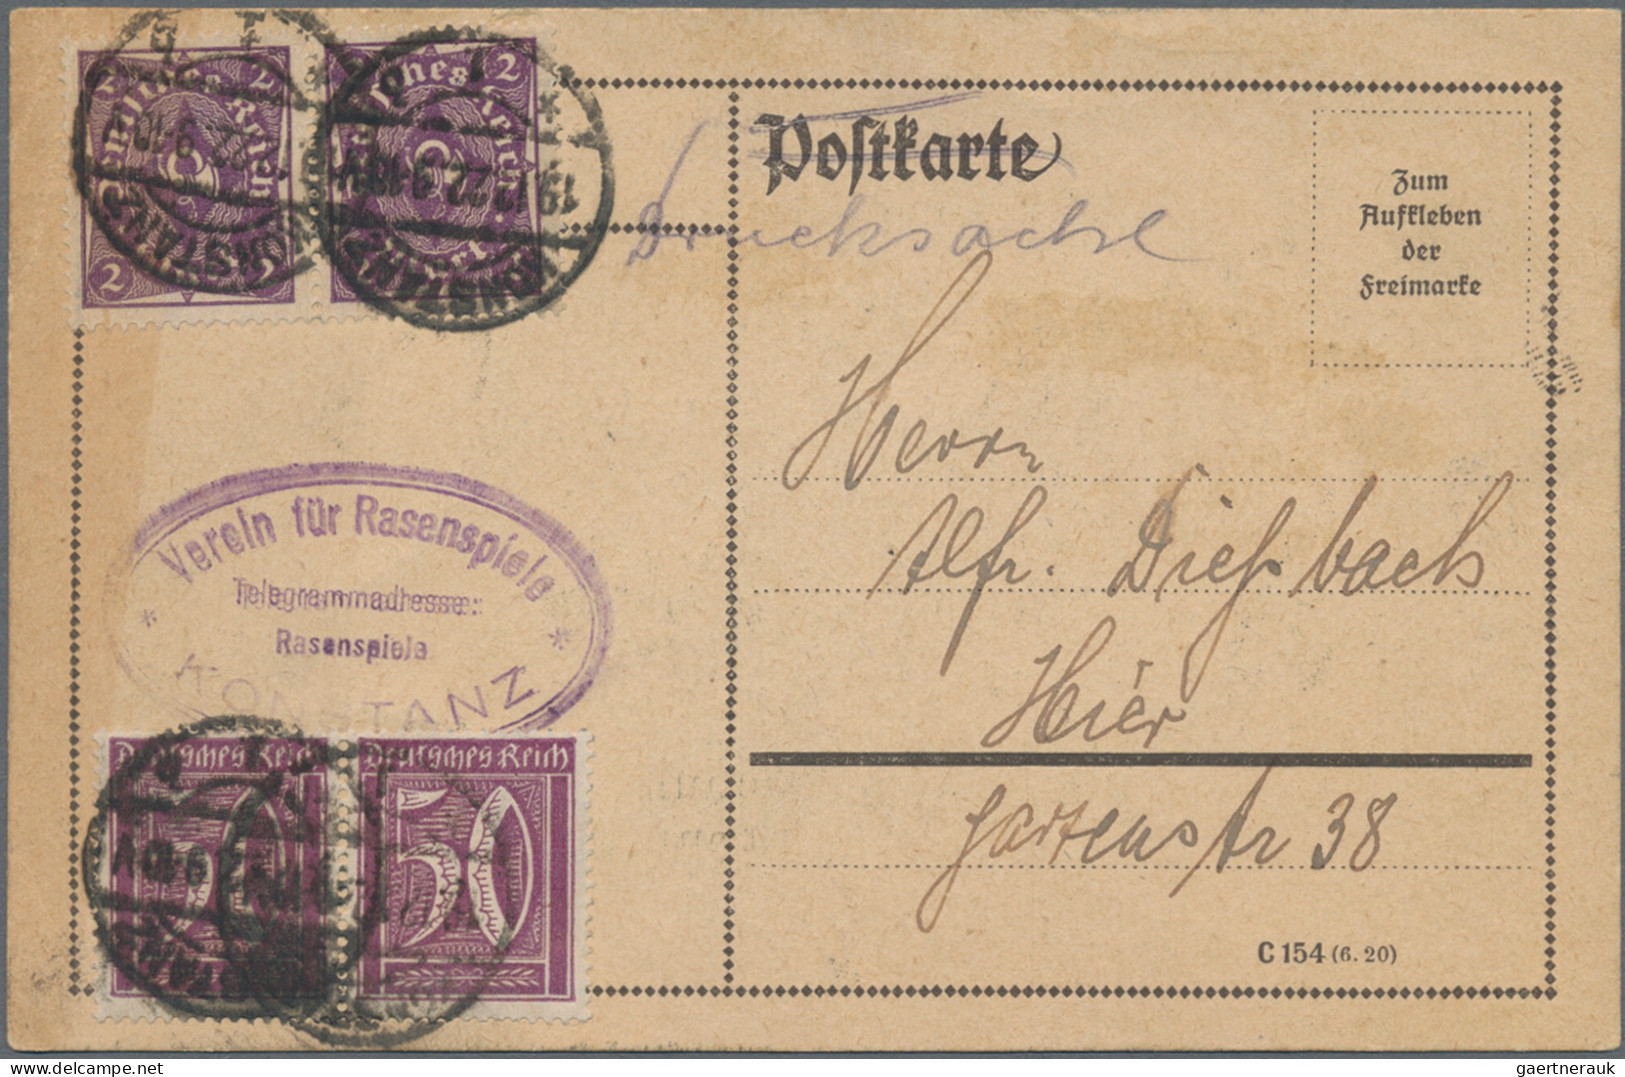 Heimat: Baden-Württemberg: 1809/1938, KONSTANZ, nette Zusammenstellung mit 13 Be